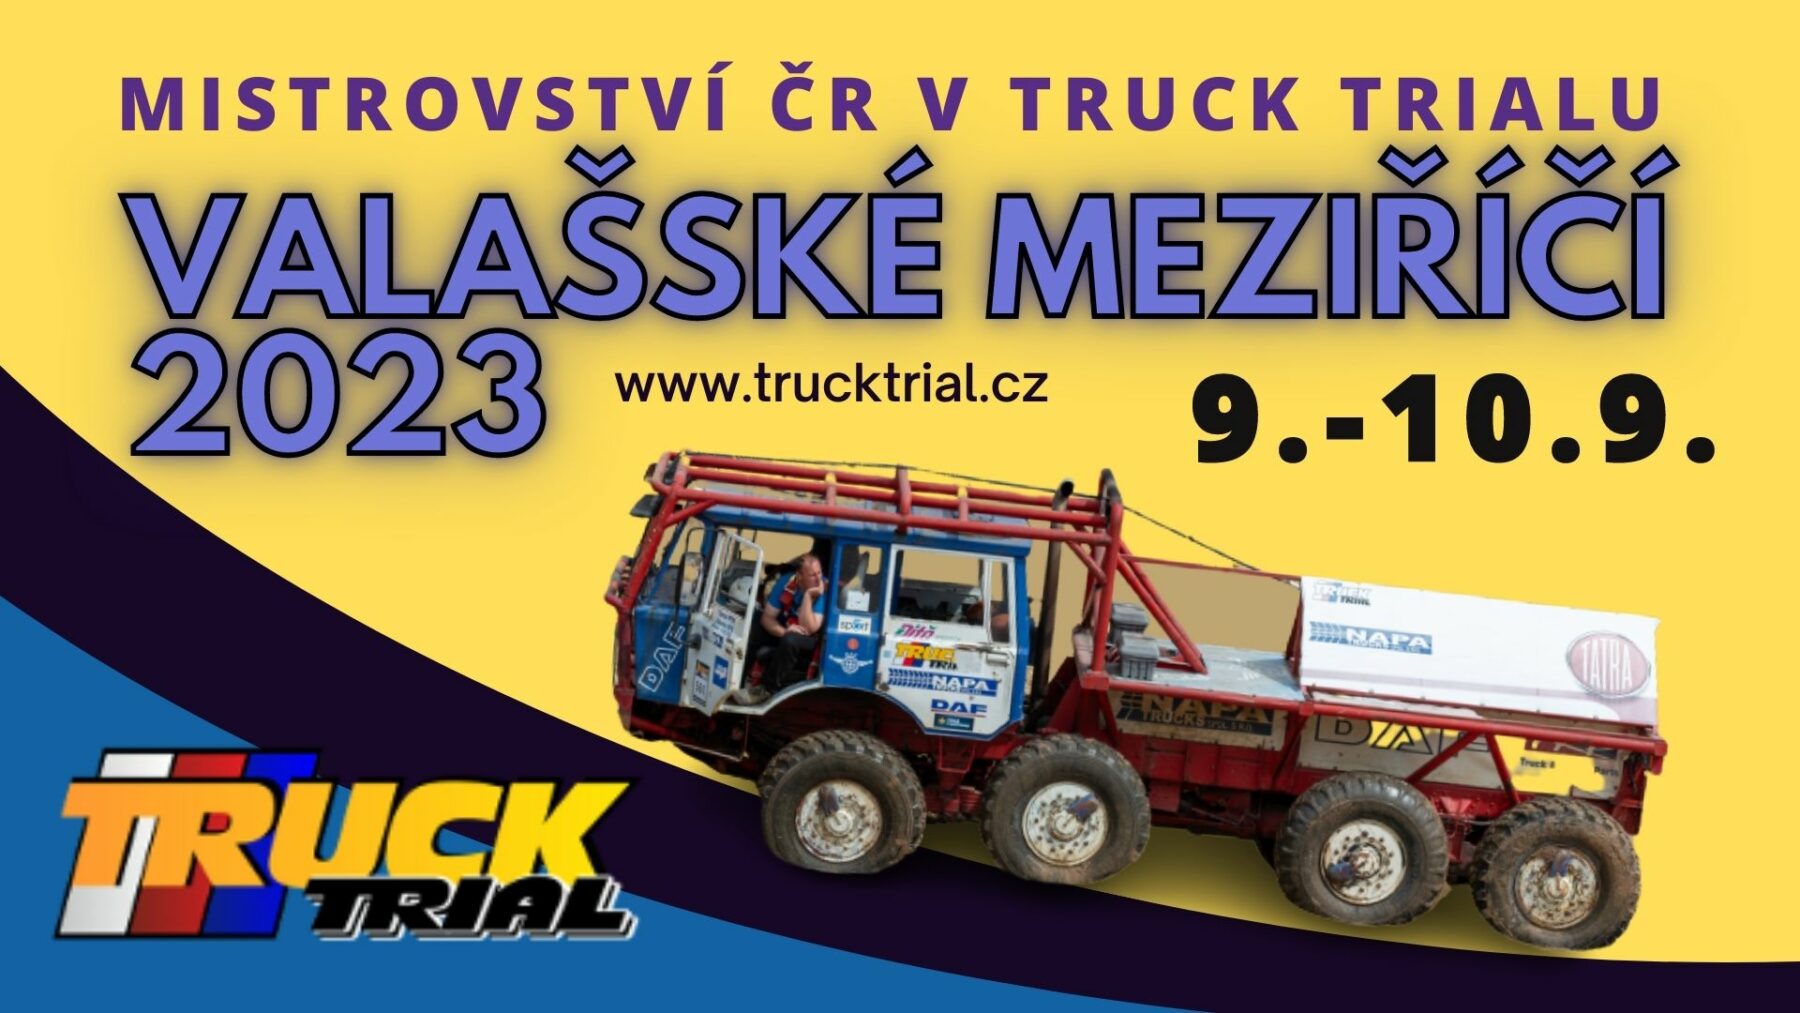 Mistrovství ČR v Truck trialu 2023 - Valašské Meziříčí